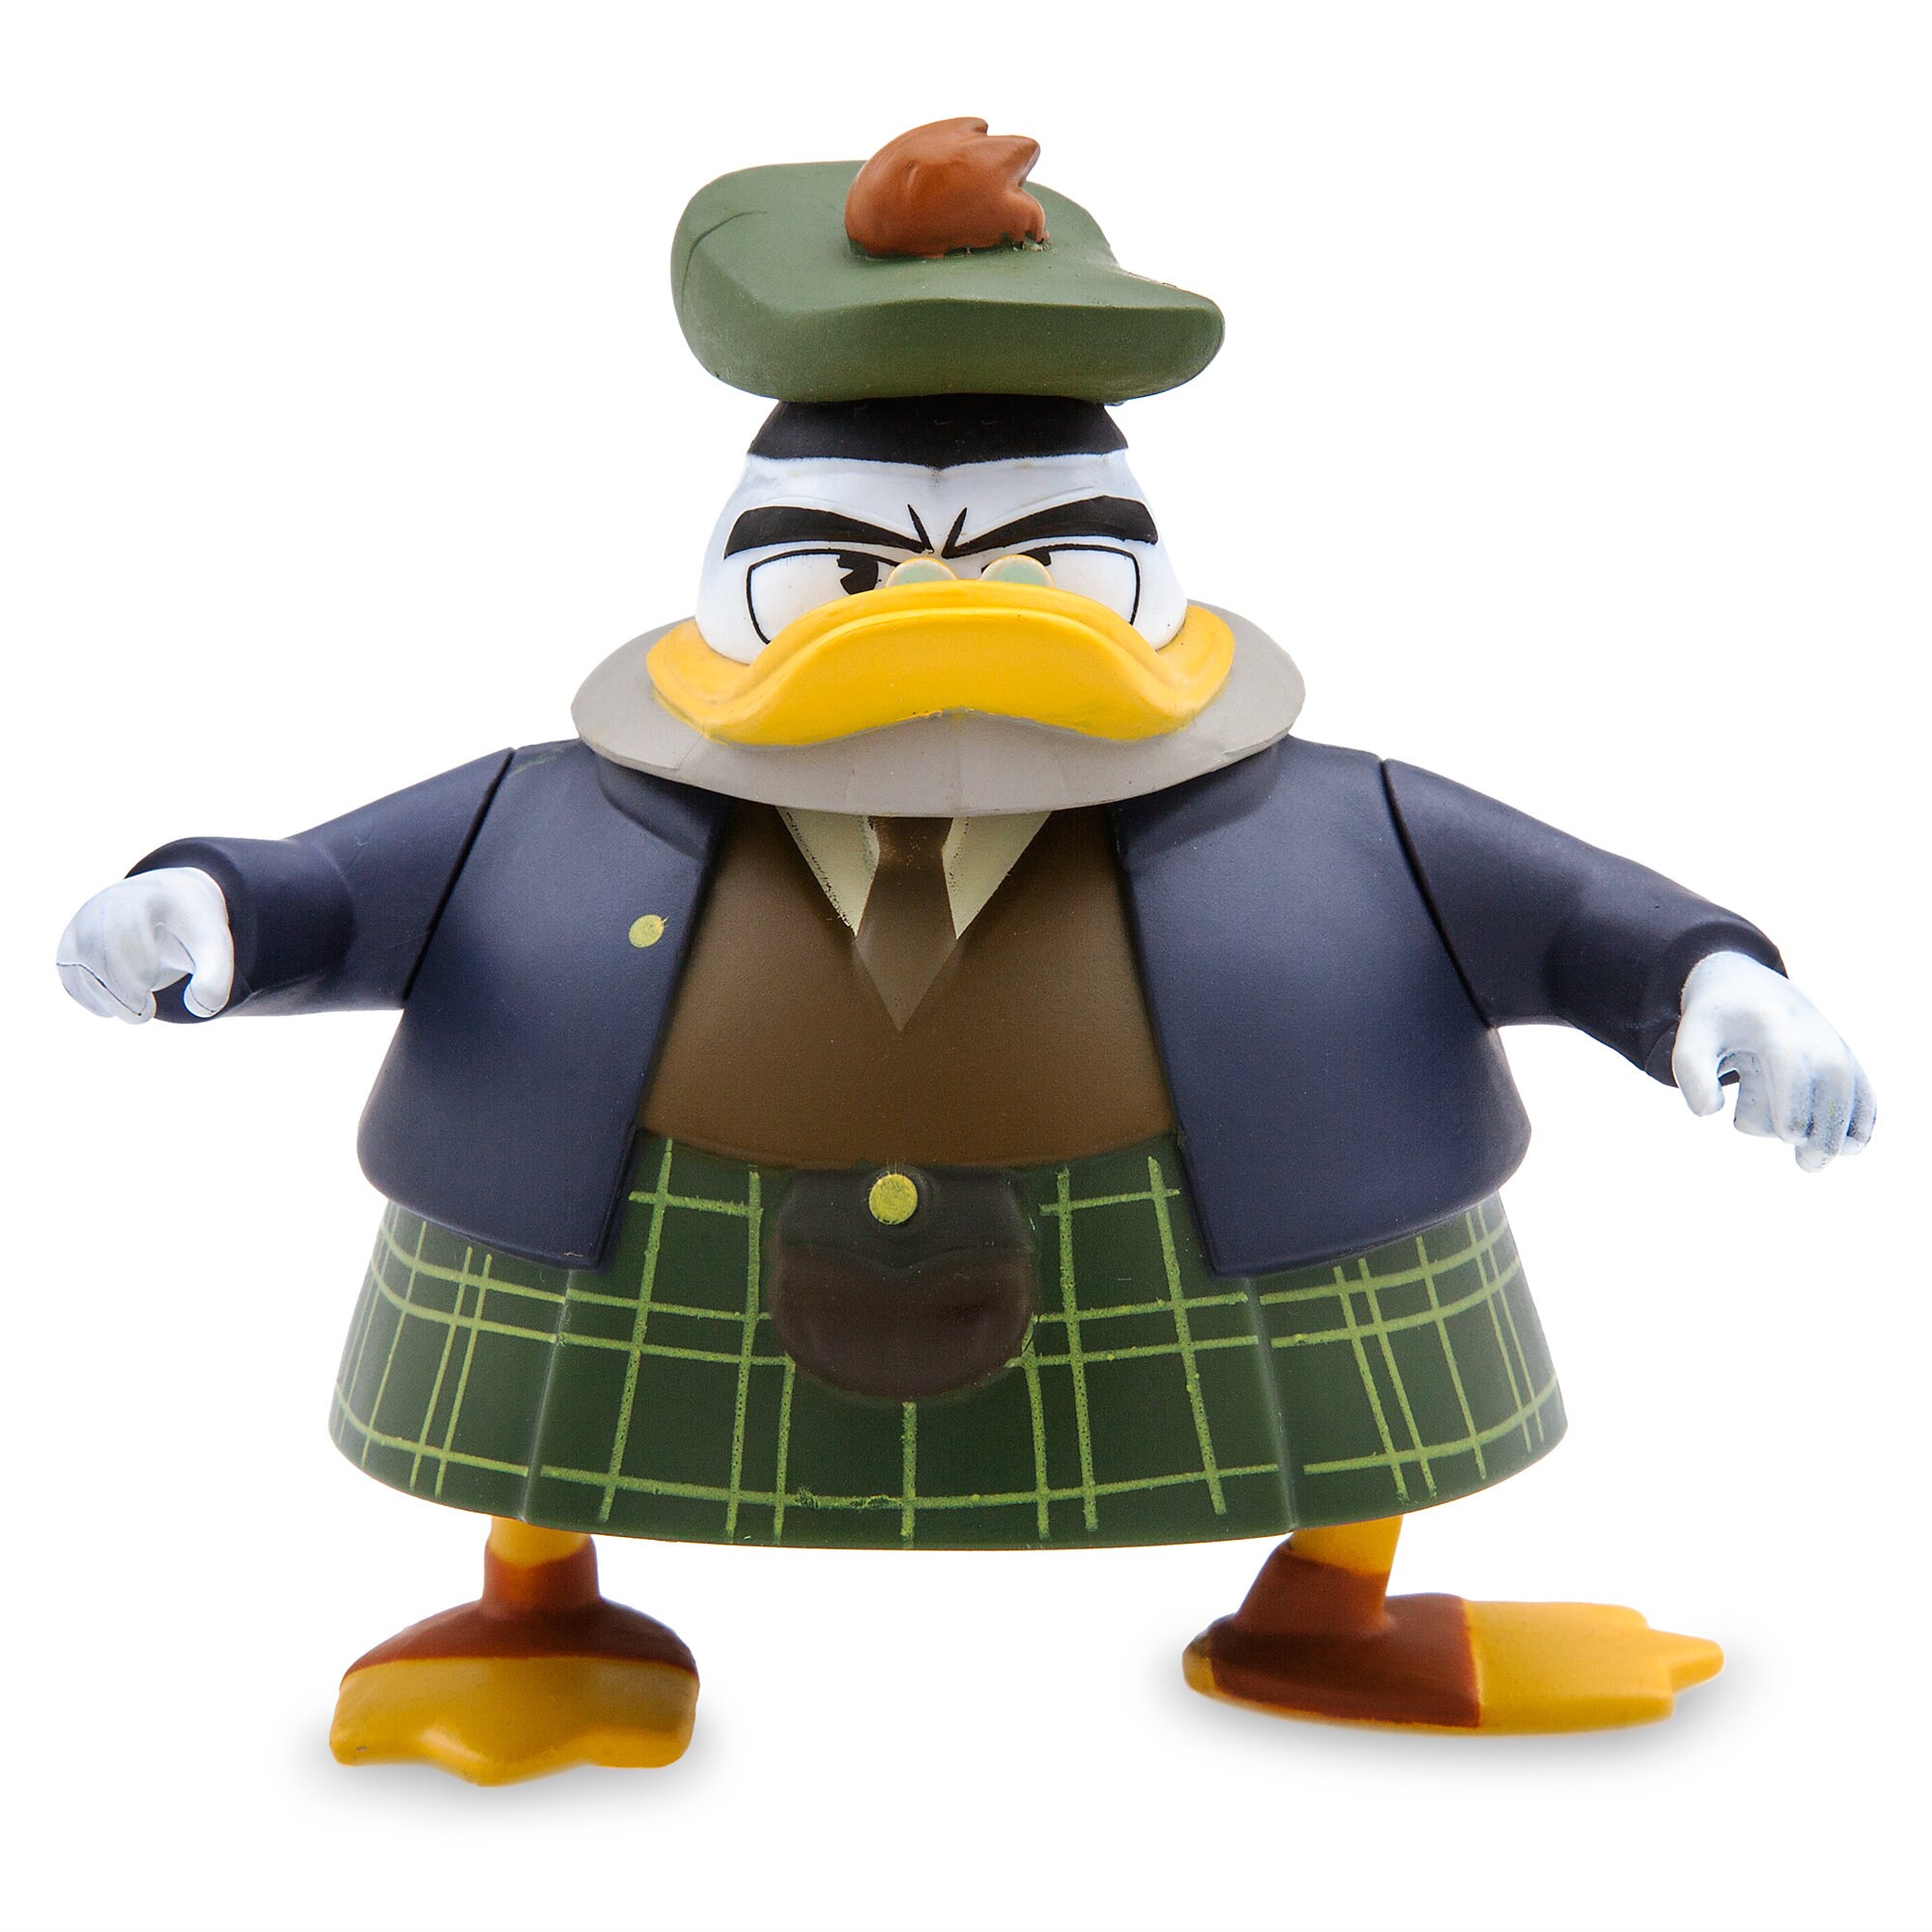 Flintheart Glomgold Action Figure - DuckTales